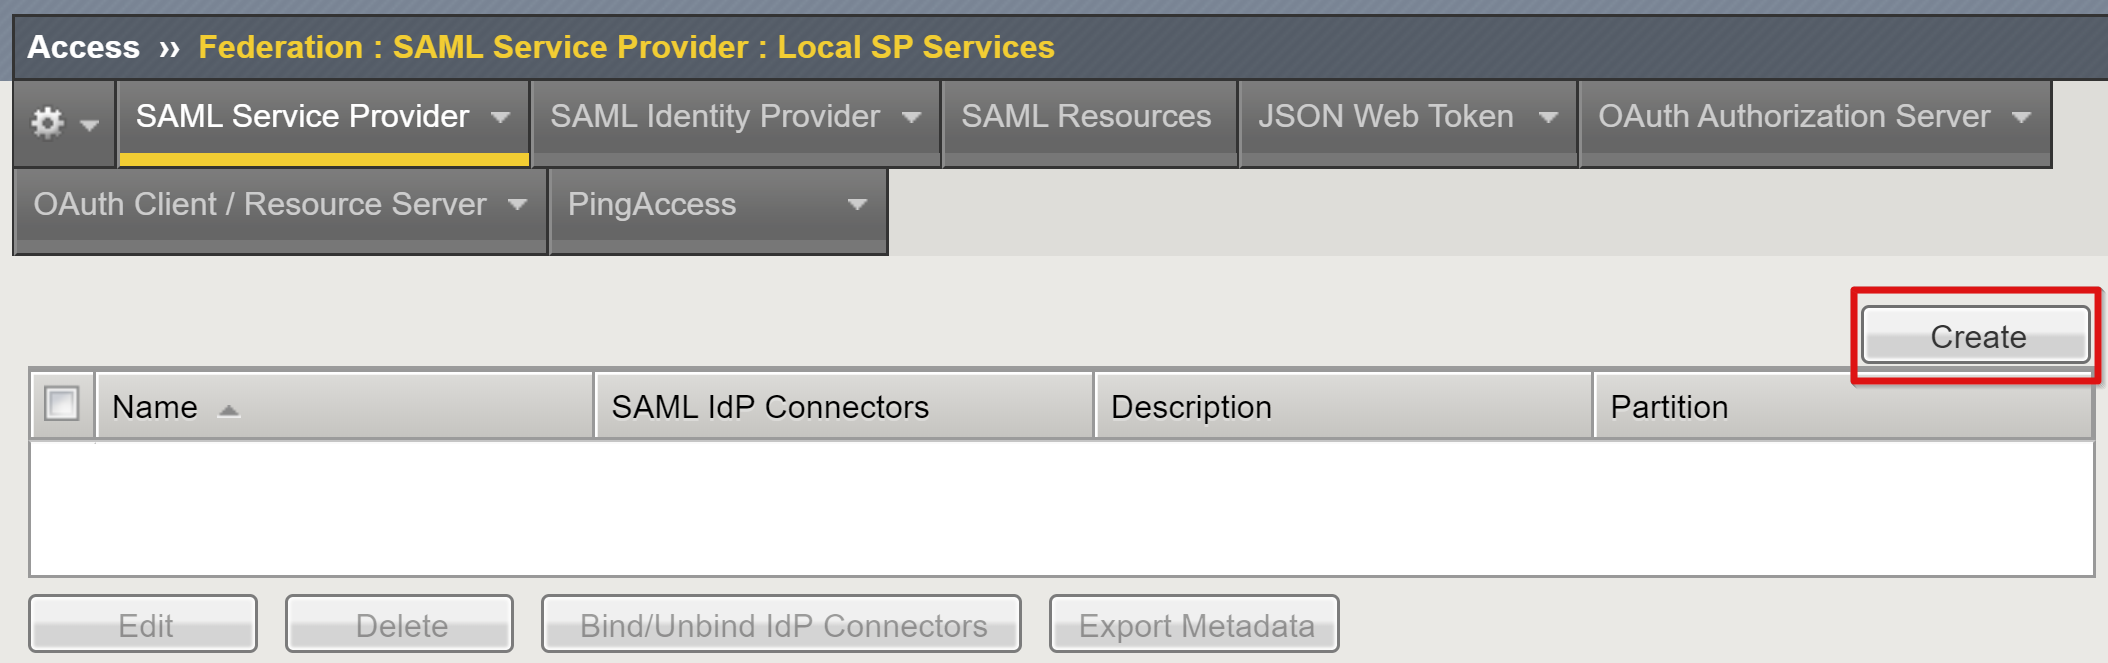 Cuplikan layar opsi Buat di bawah Penyedia Layanan SAML di Layanan SP Lokal.